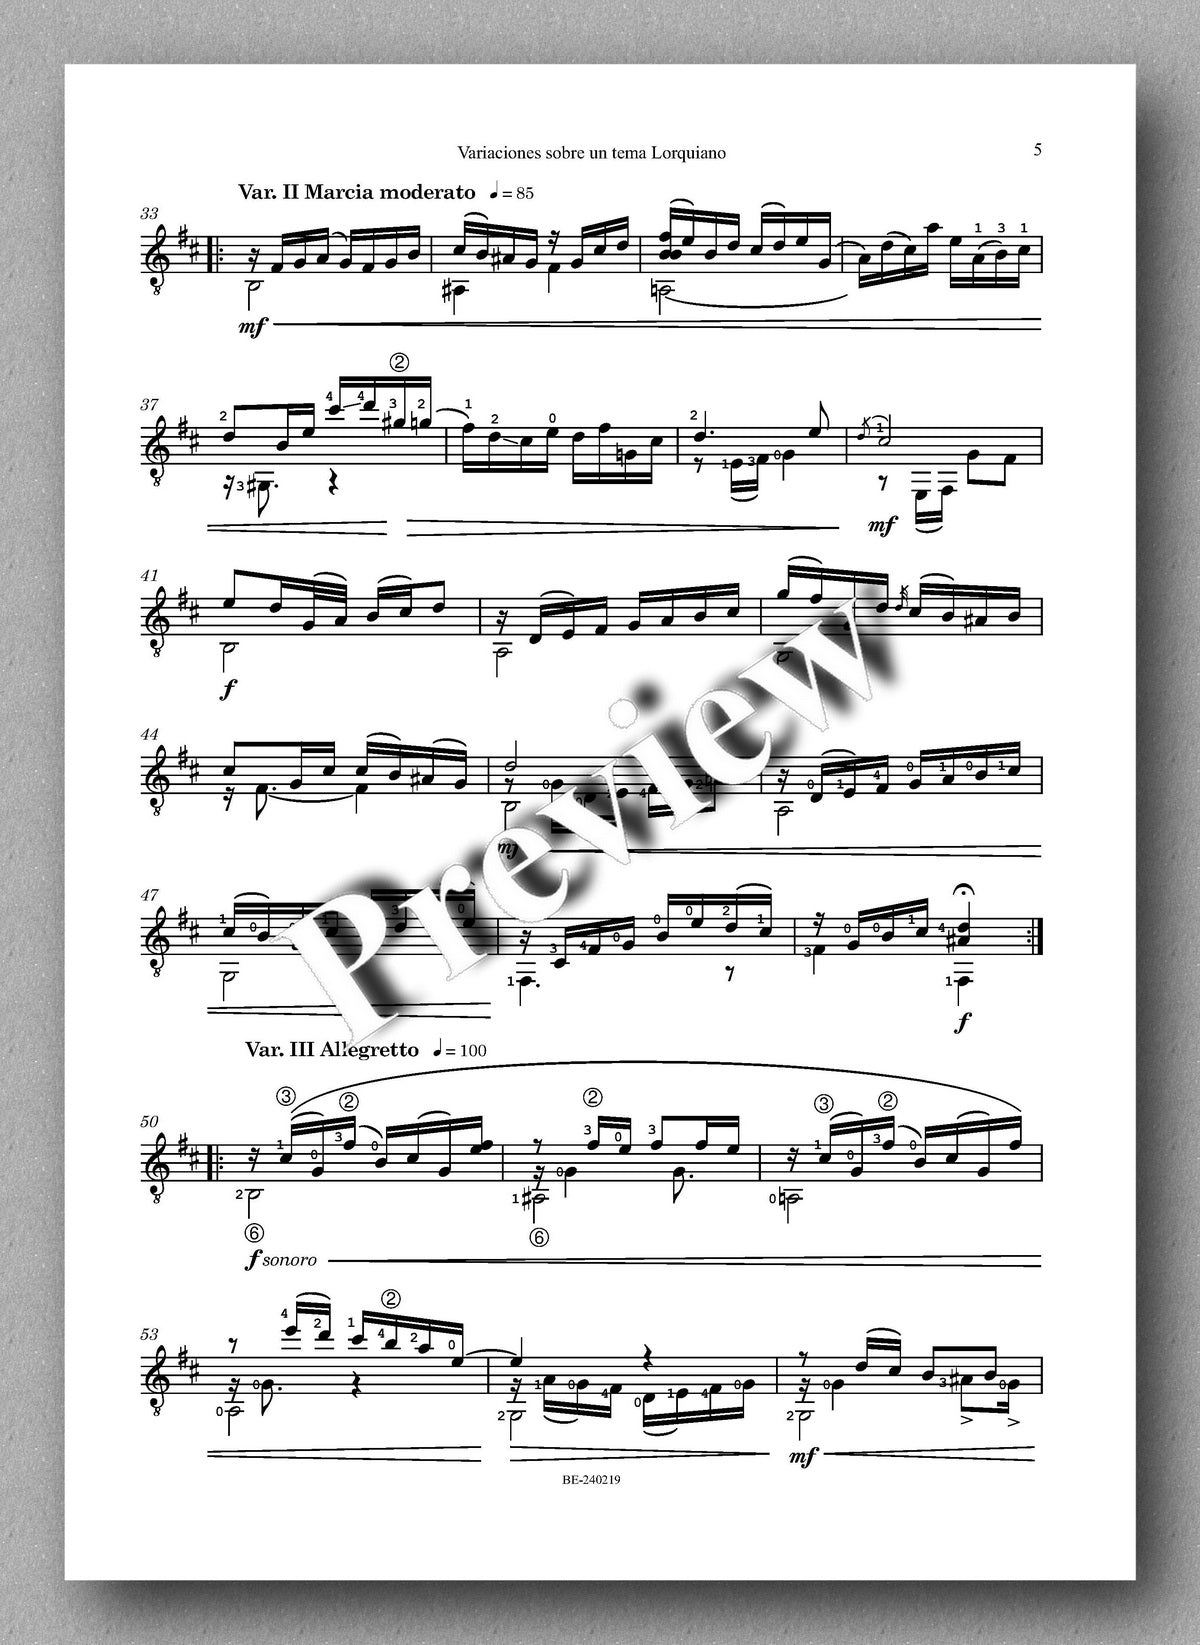 Juan Erena, Variaciones sobre un tema Lorquiano - preview of the music score 2